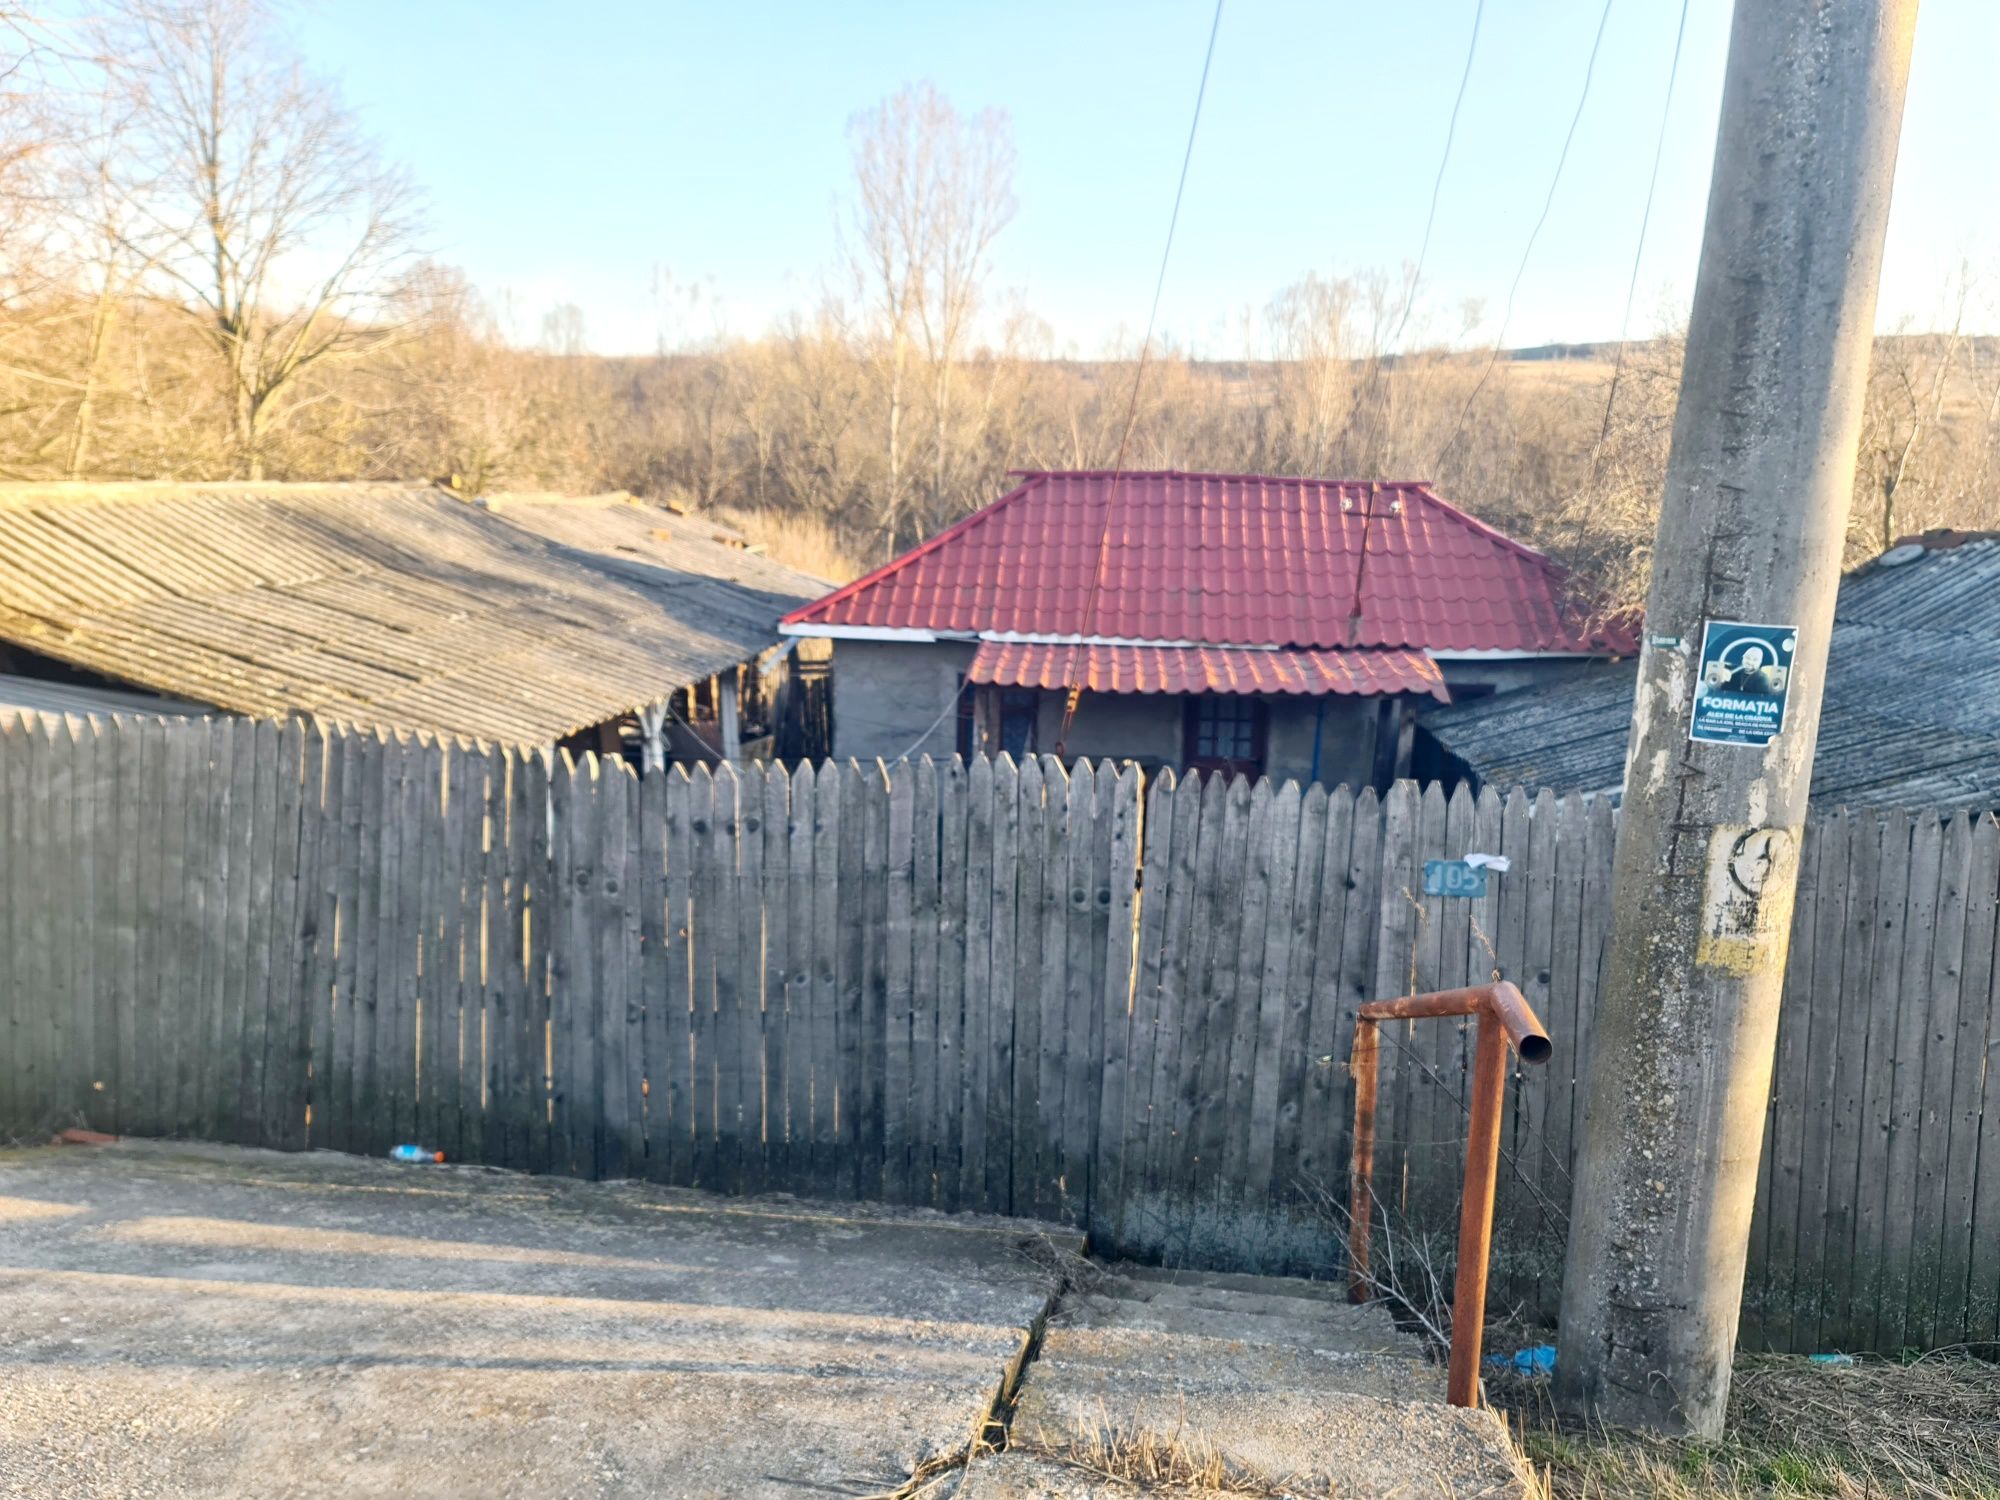 Vand casa batraneasca la tara , 30km de Craiova